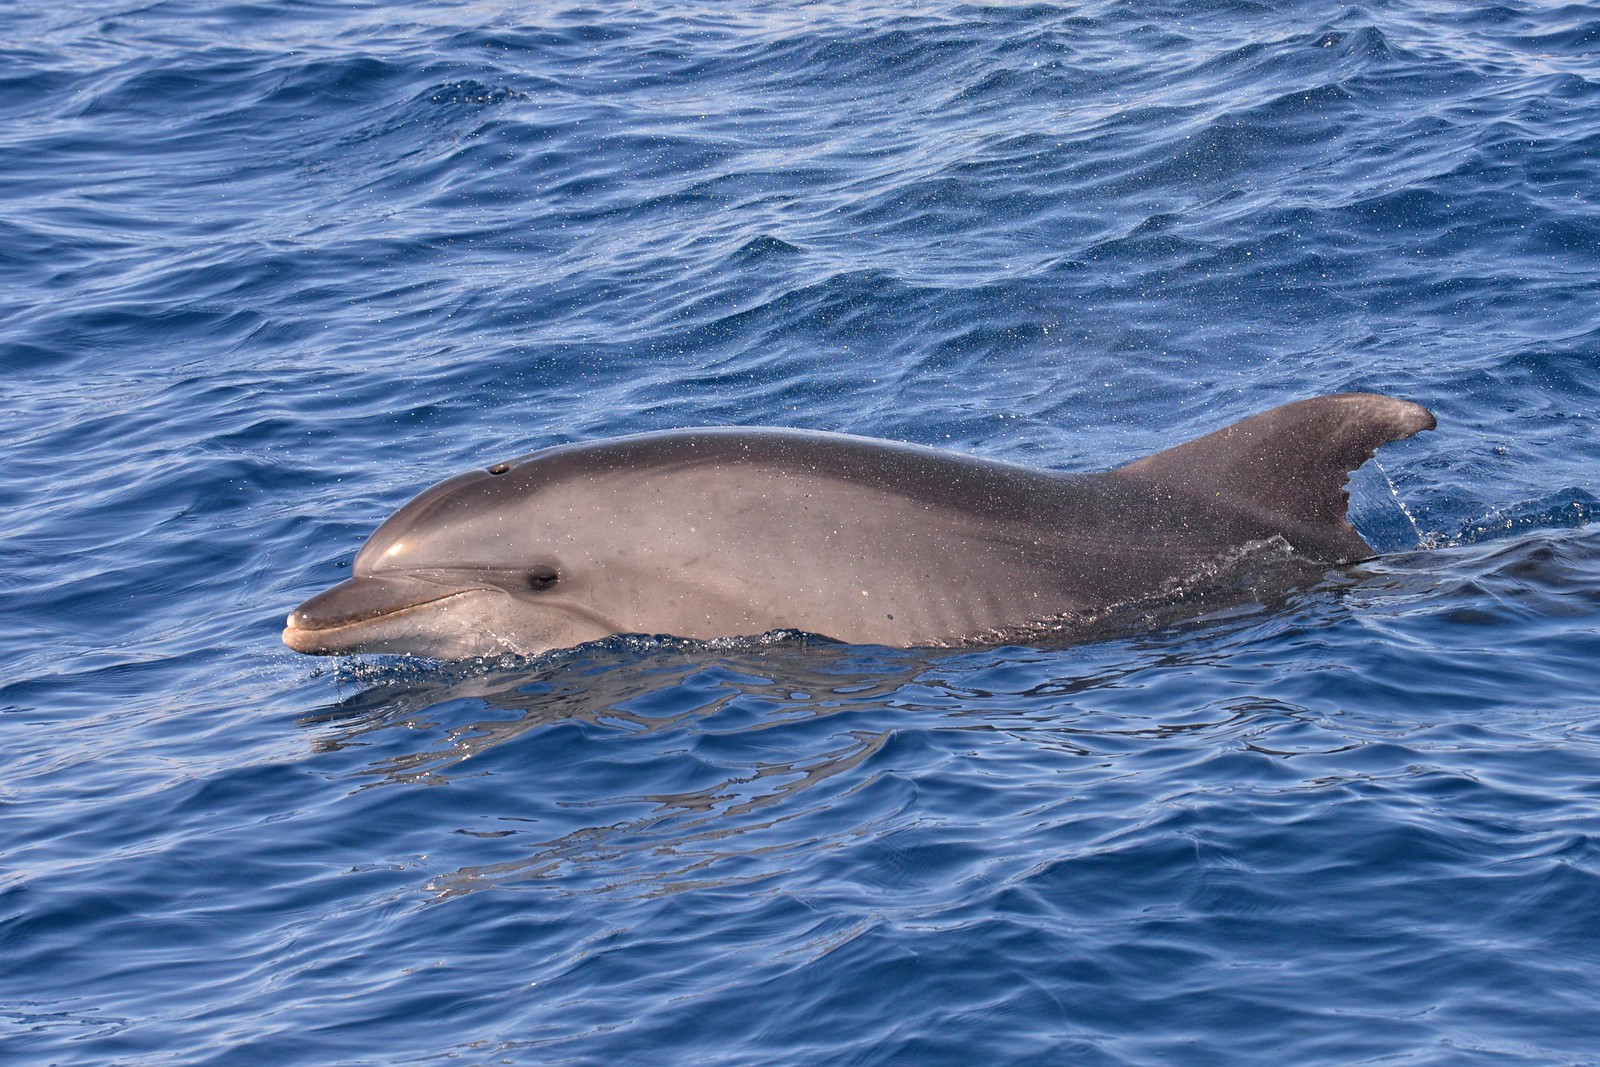 Common bottlenose dolphin swimming in ocean